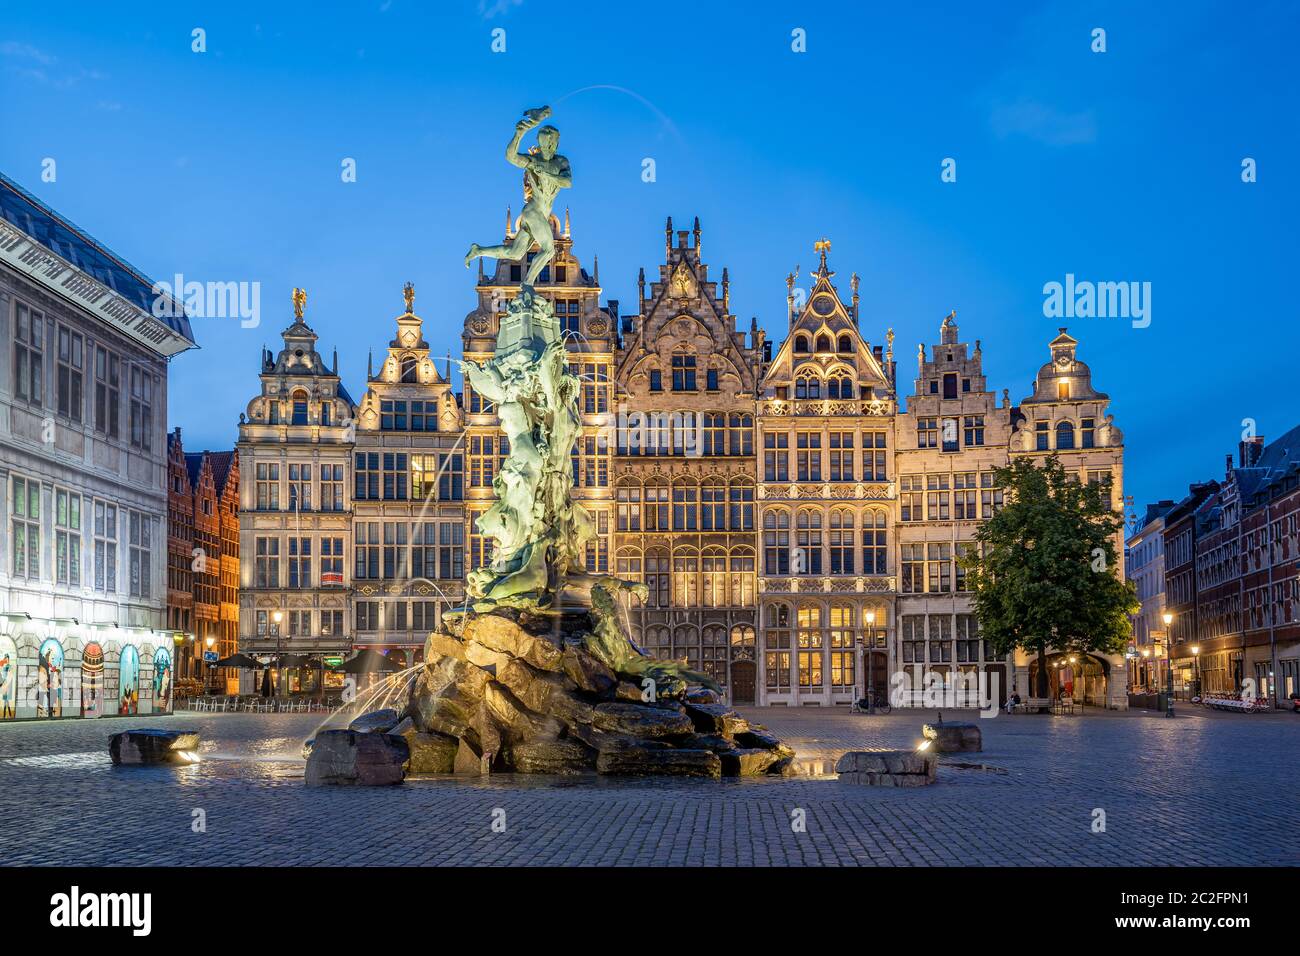 Gildenhaus des Grote Markt von Antwerpen in Belgien Stockfoto